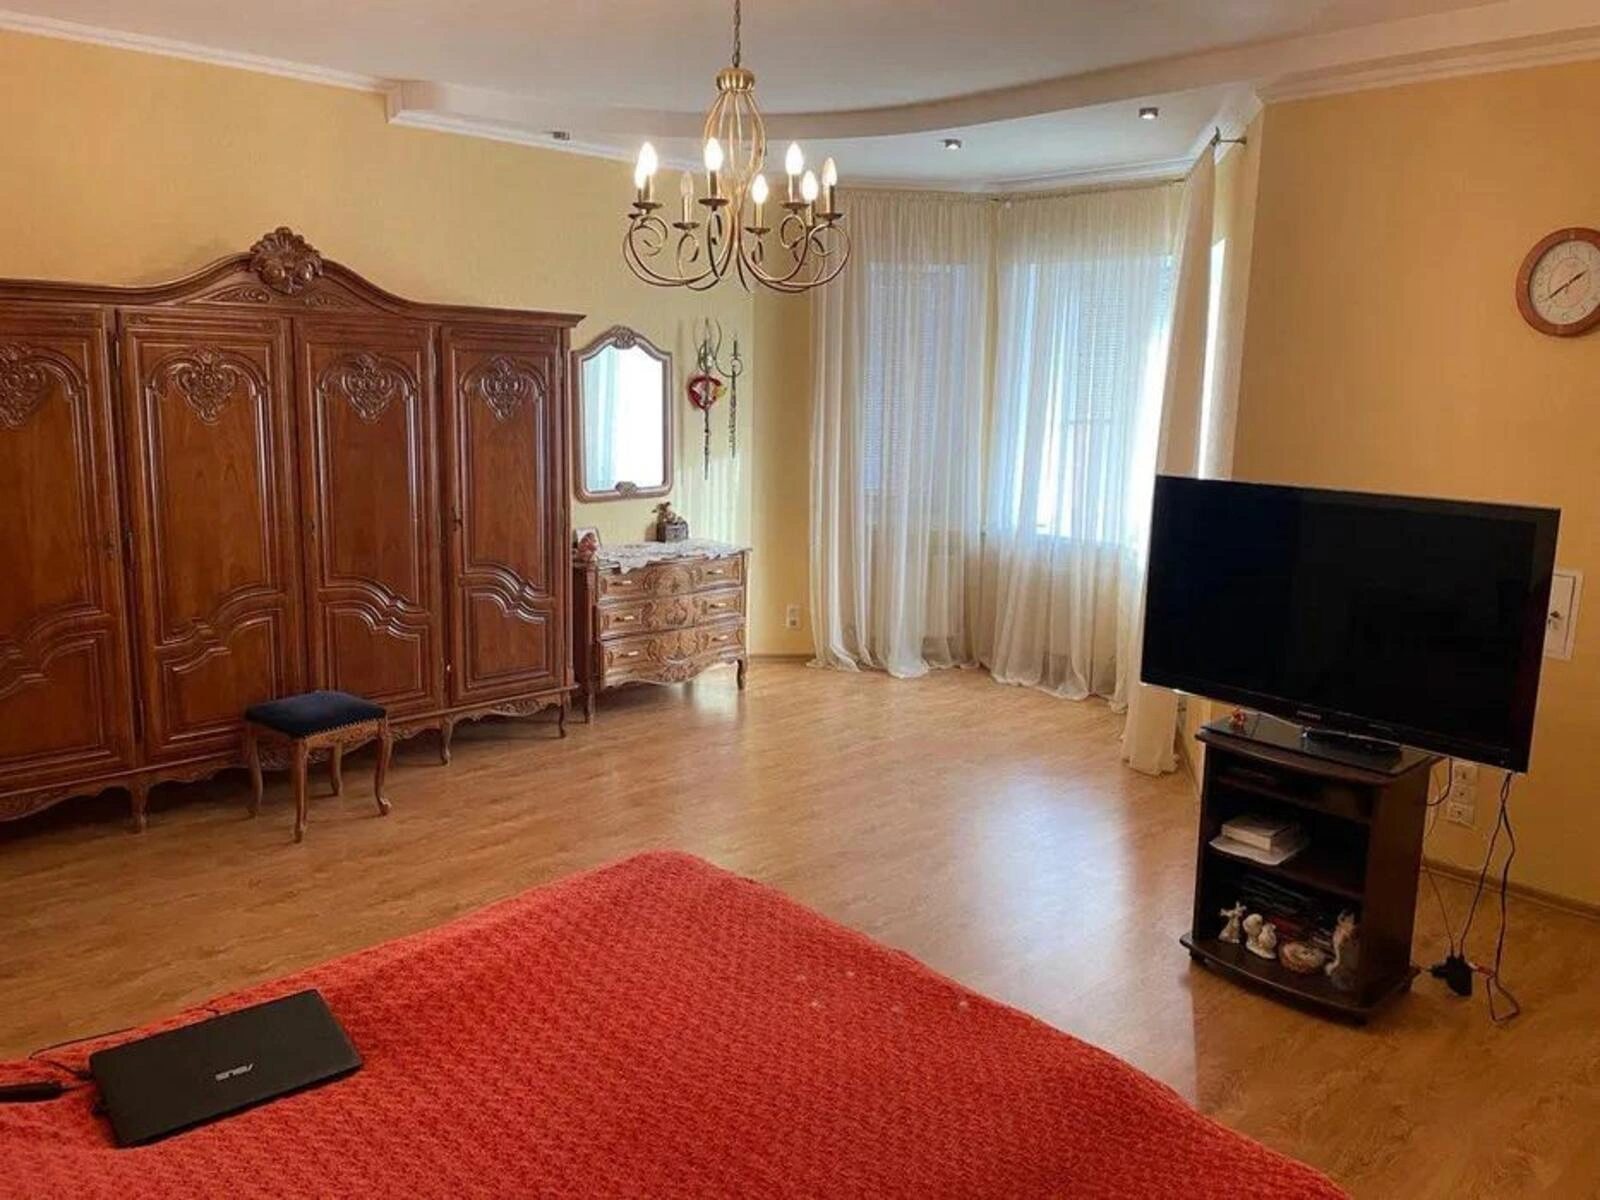 Продам новий розкішний будинок в районі Жадова/Соколівка.